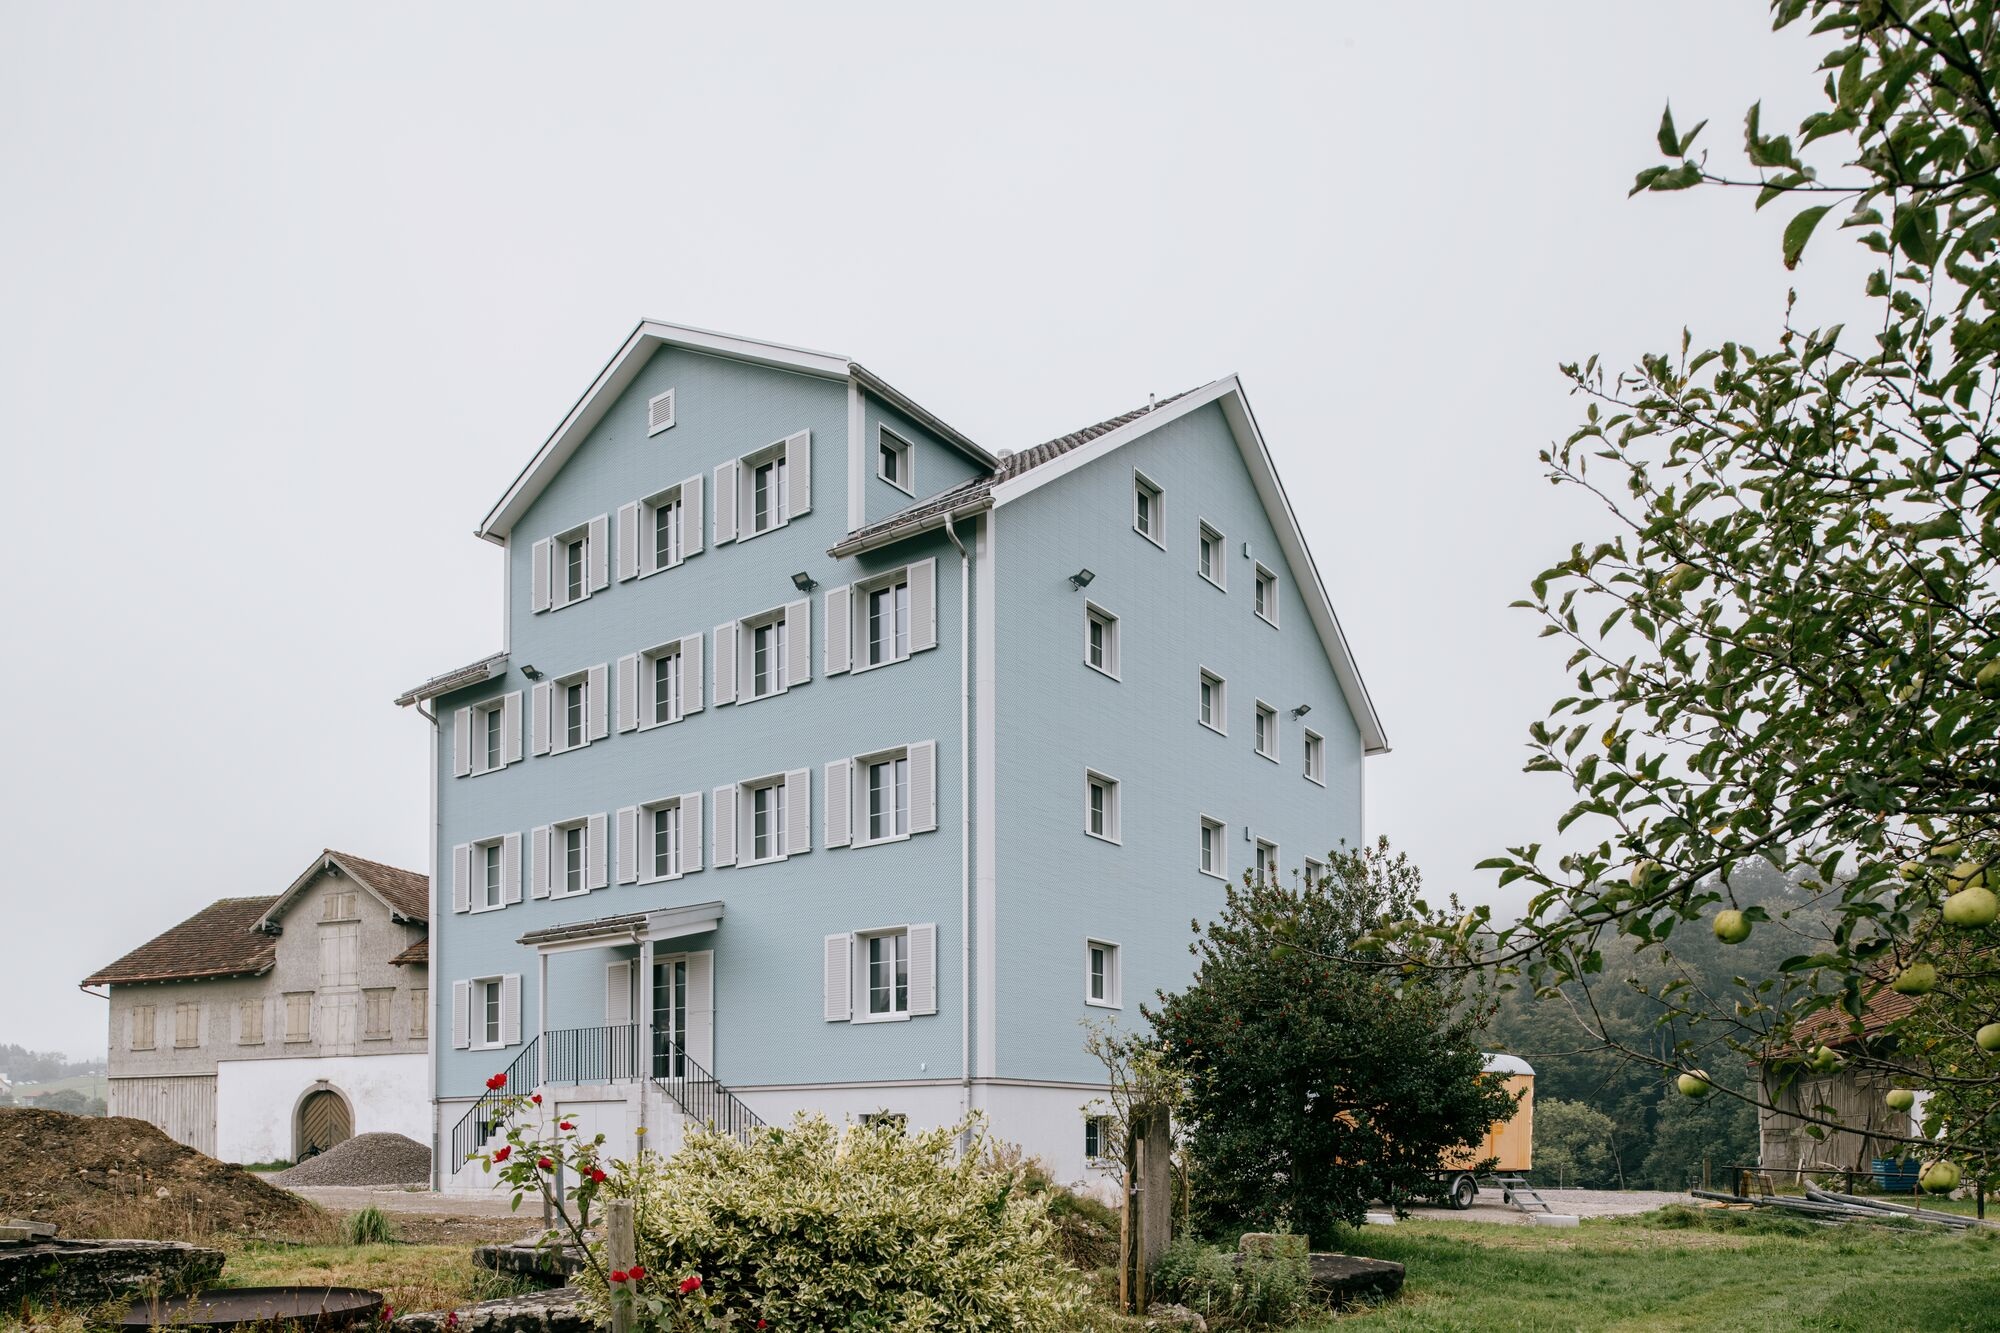 Maison plurifamiliale de quatre étages avec façade en Eternit bleu clair